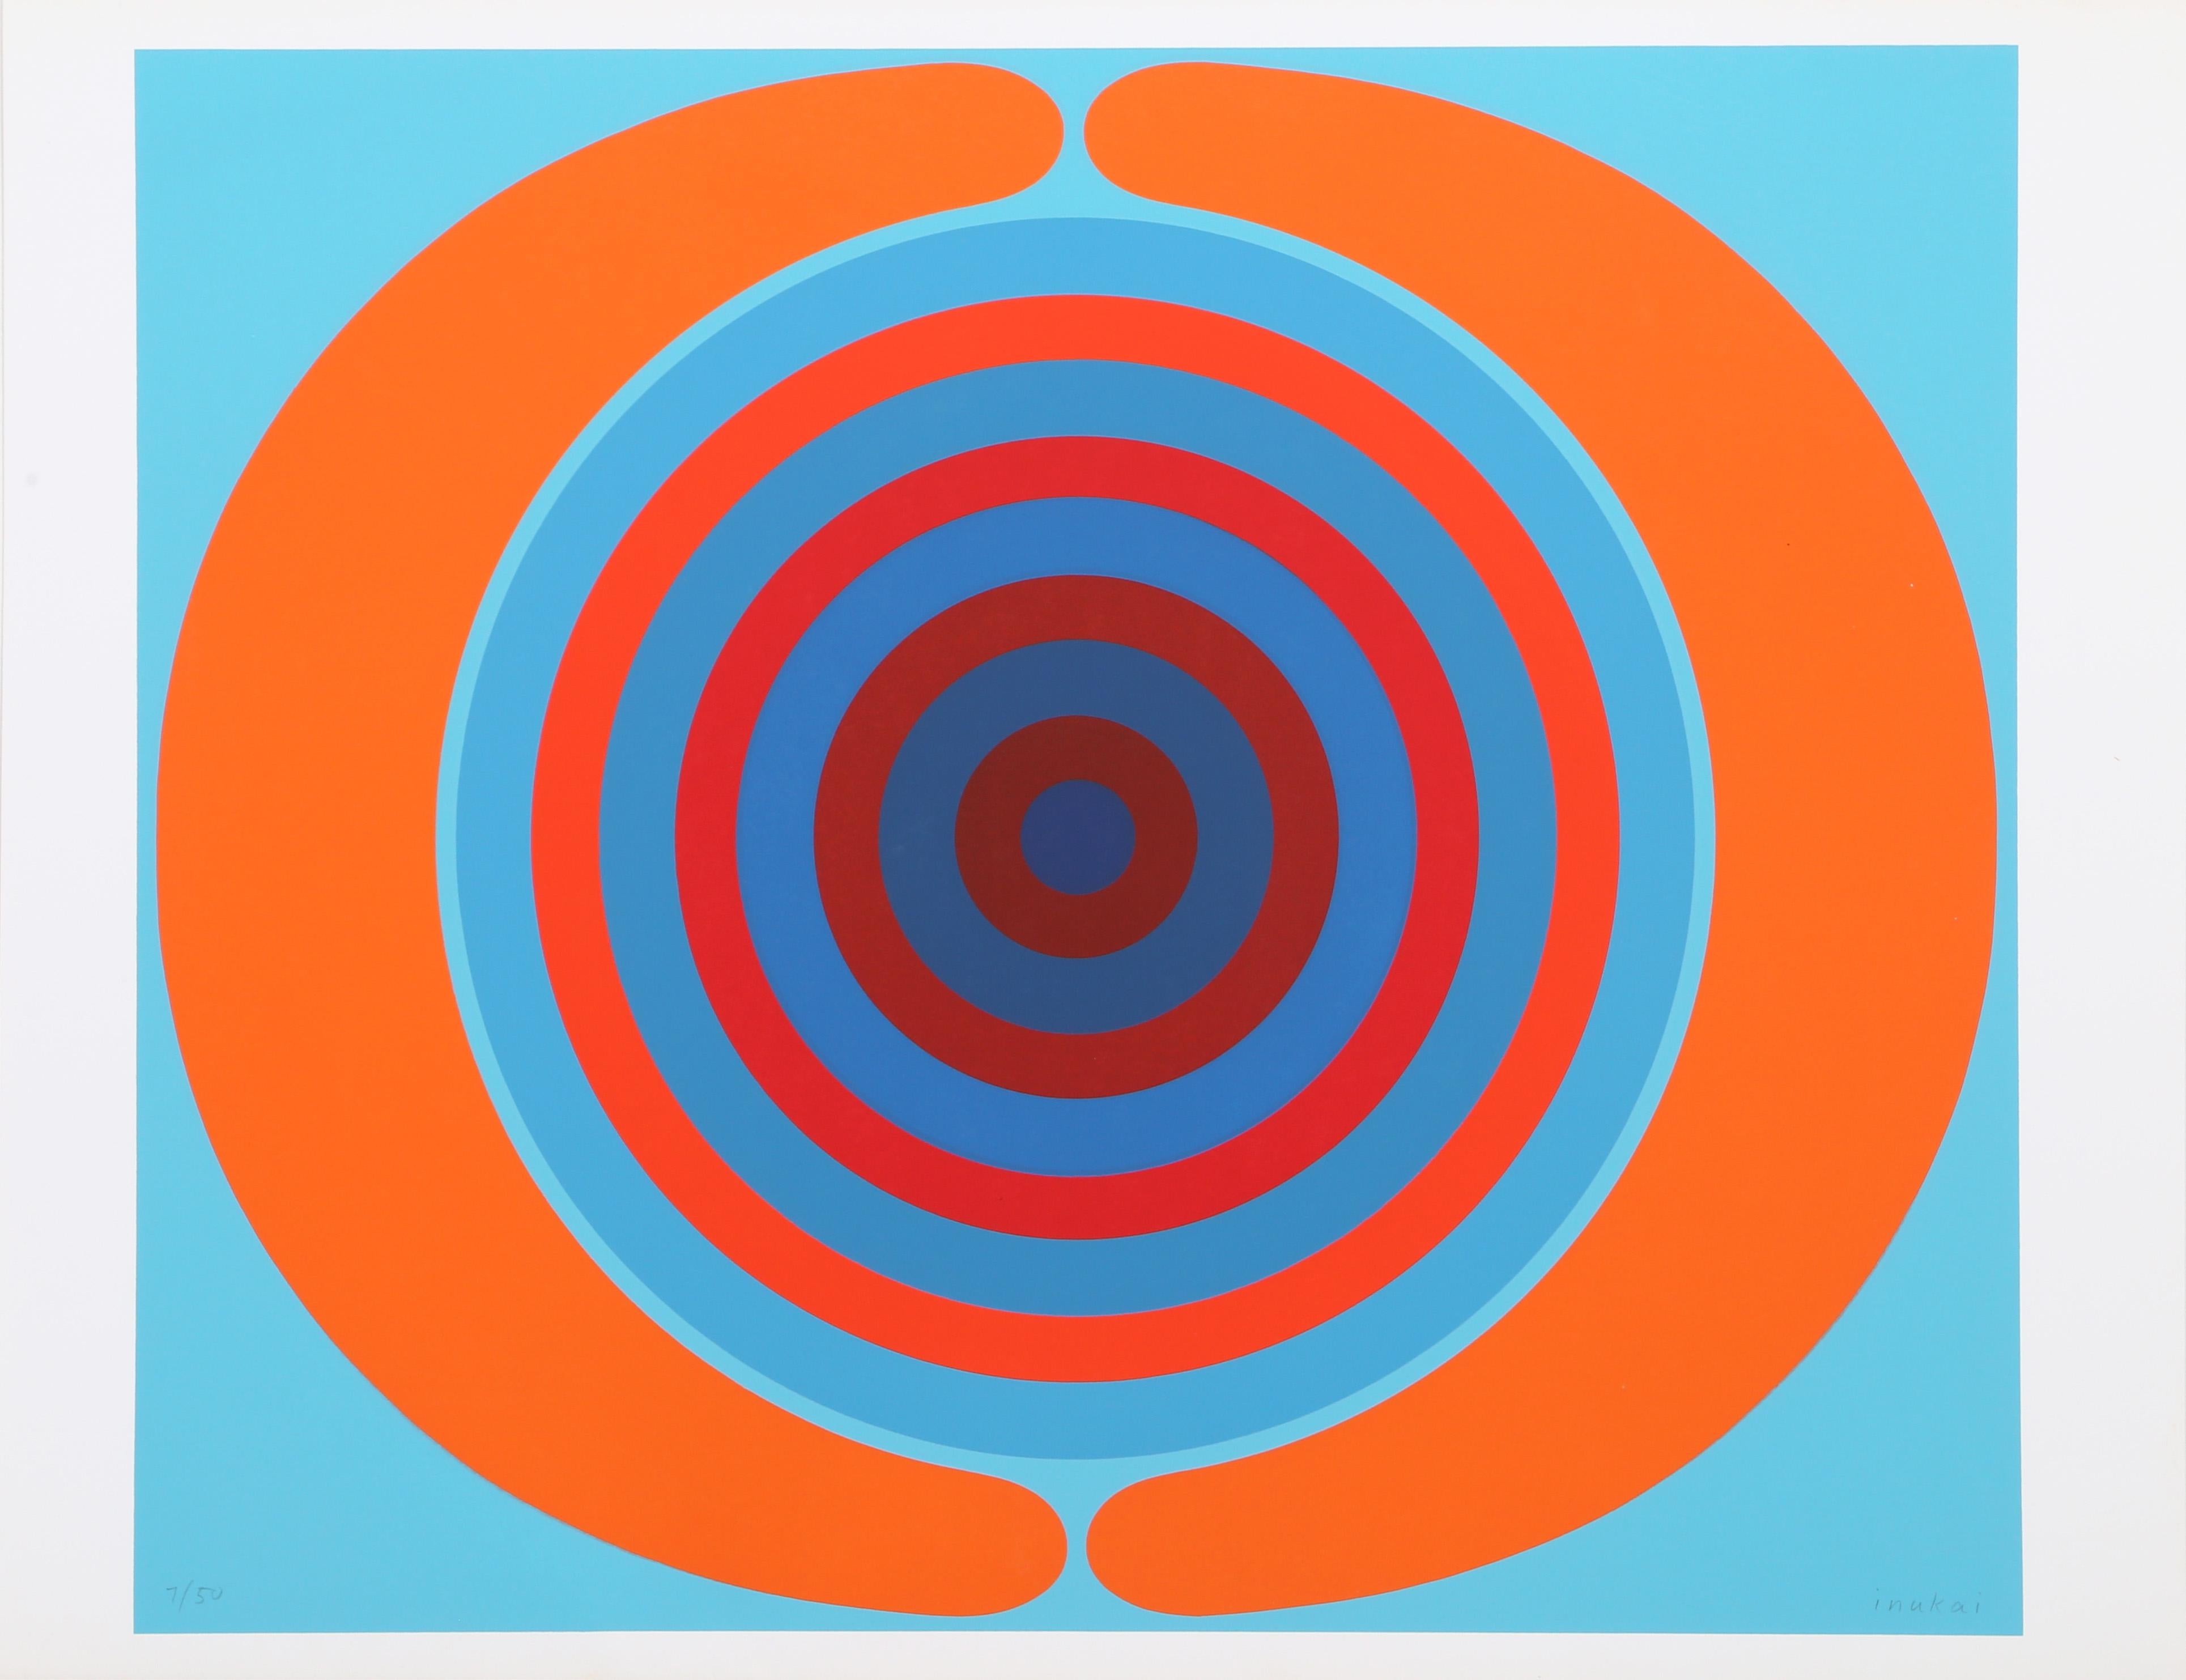 Künstler: Kyohei Inukai, Amerikaner (1913 - 1985)
Titel: Spirale
Jahr: ca. 1970
Medium: Siebdruck, signiert und nummeriert mit Bleistift
Auflage: 50
Bildgröße: 21,5 x 25,5 Zoll
Größe: 23 x 29,75 Zoll (58,42 x 75,57 cm)